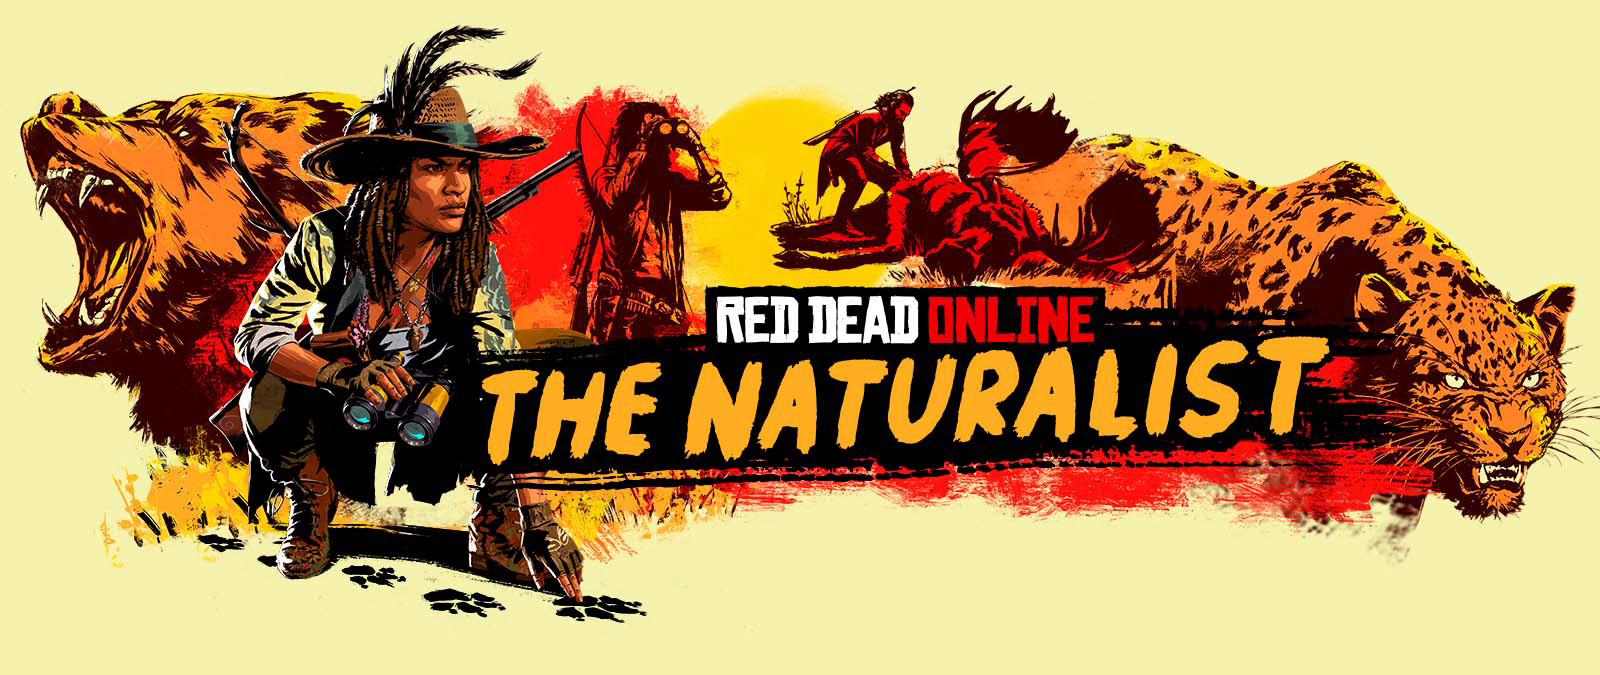 Red Dead Online. Przyrodnik. Postacie tropiące i polujące na duże zwierzęta.